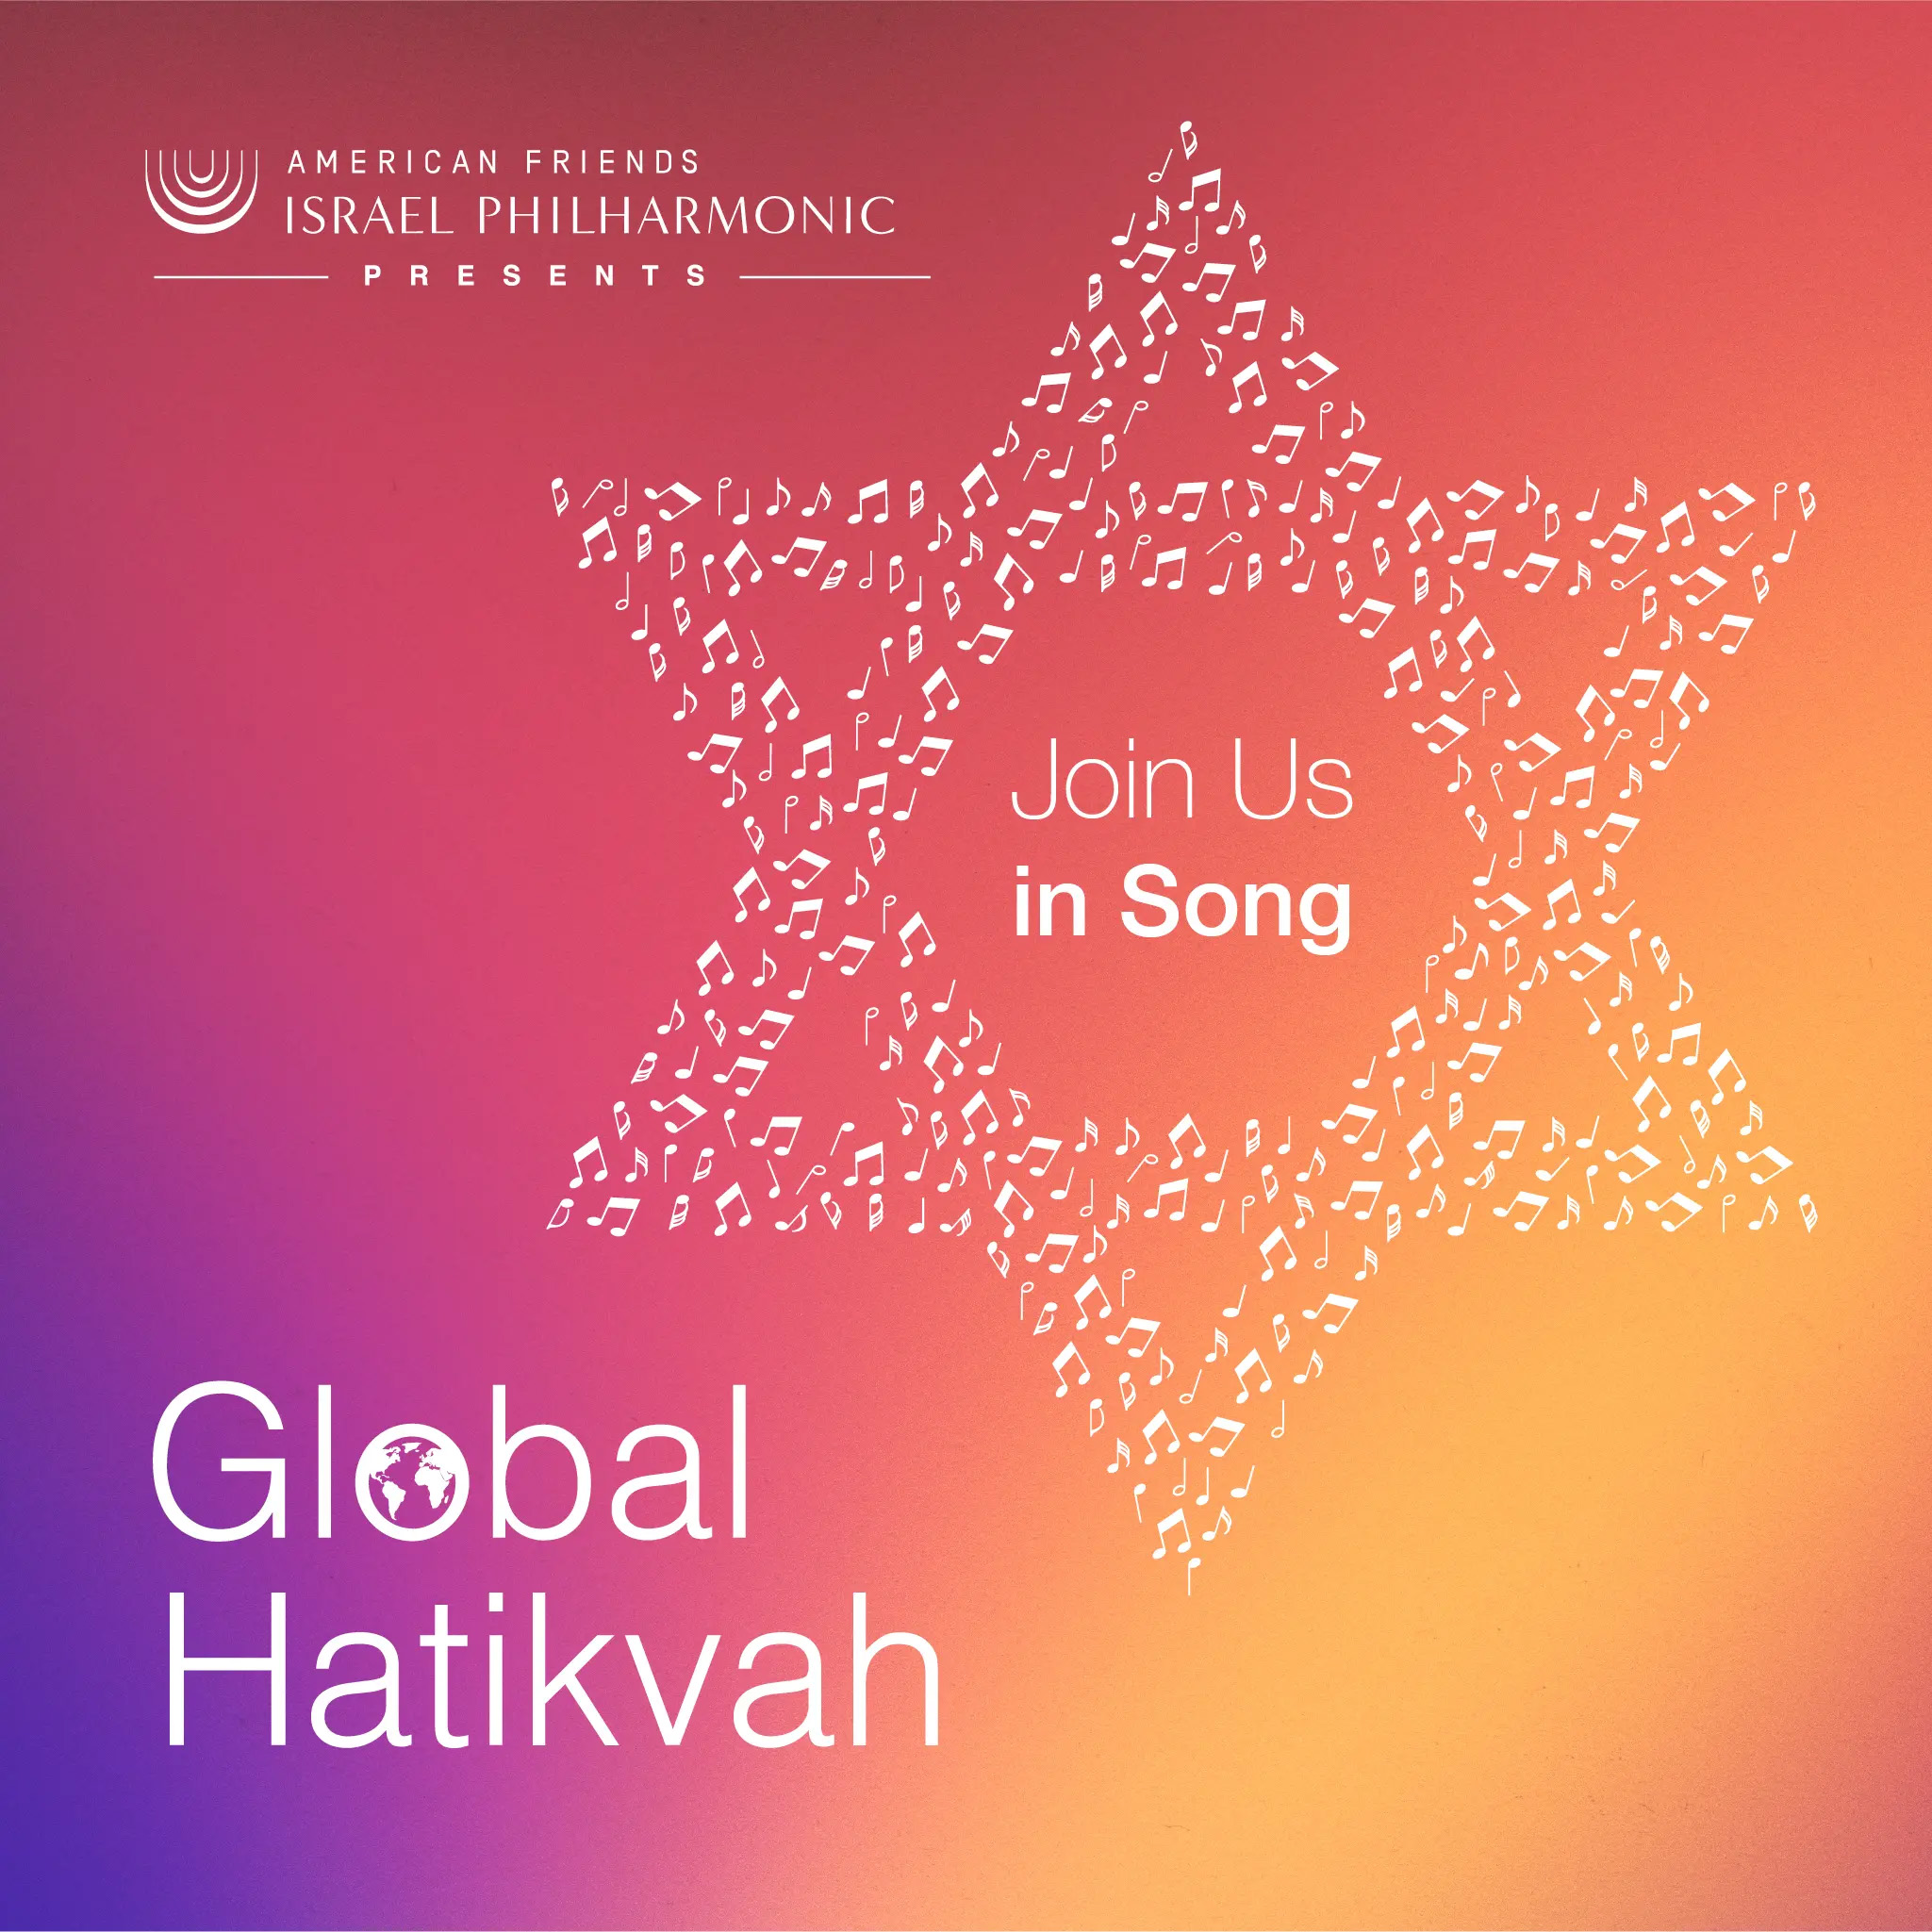 Global Hatikvah